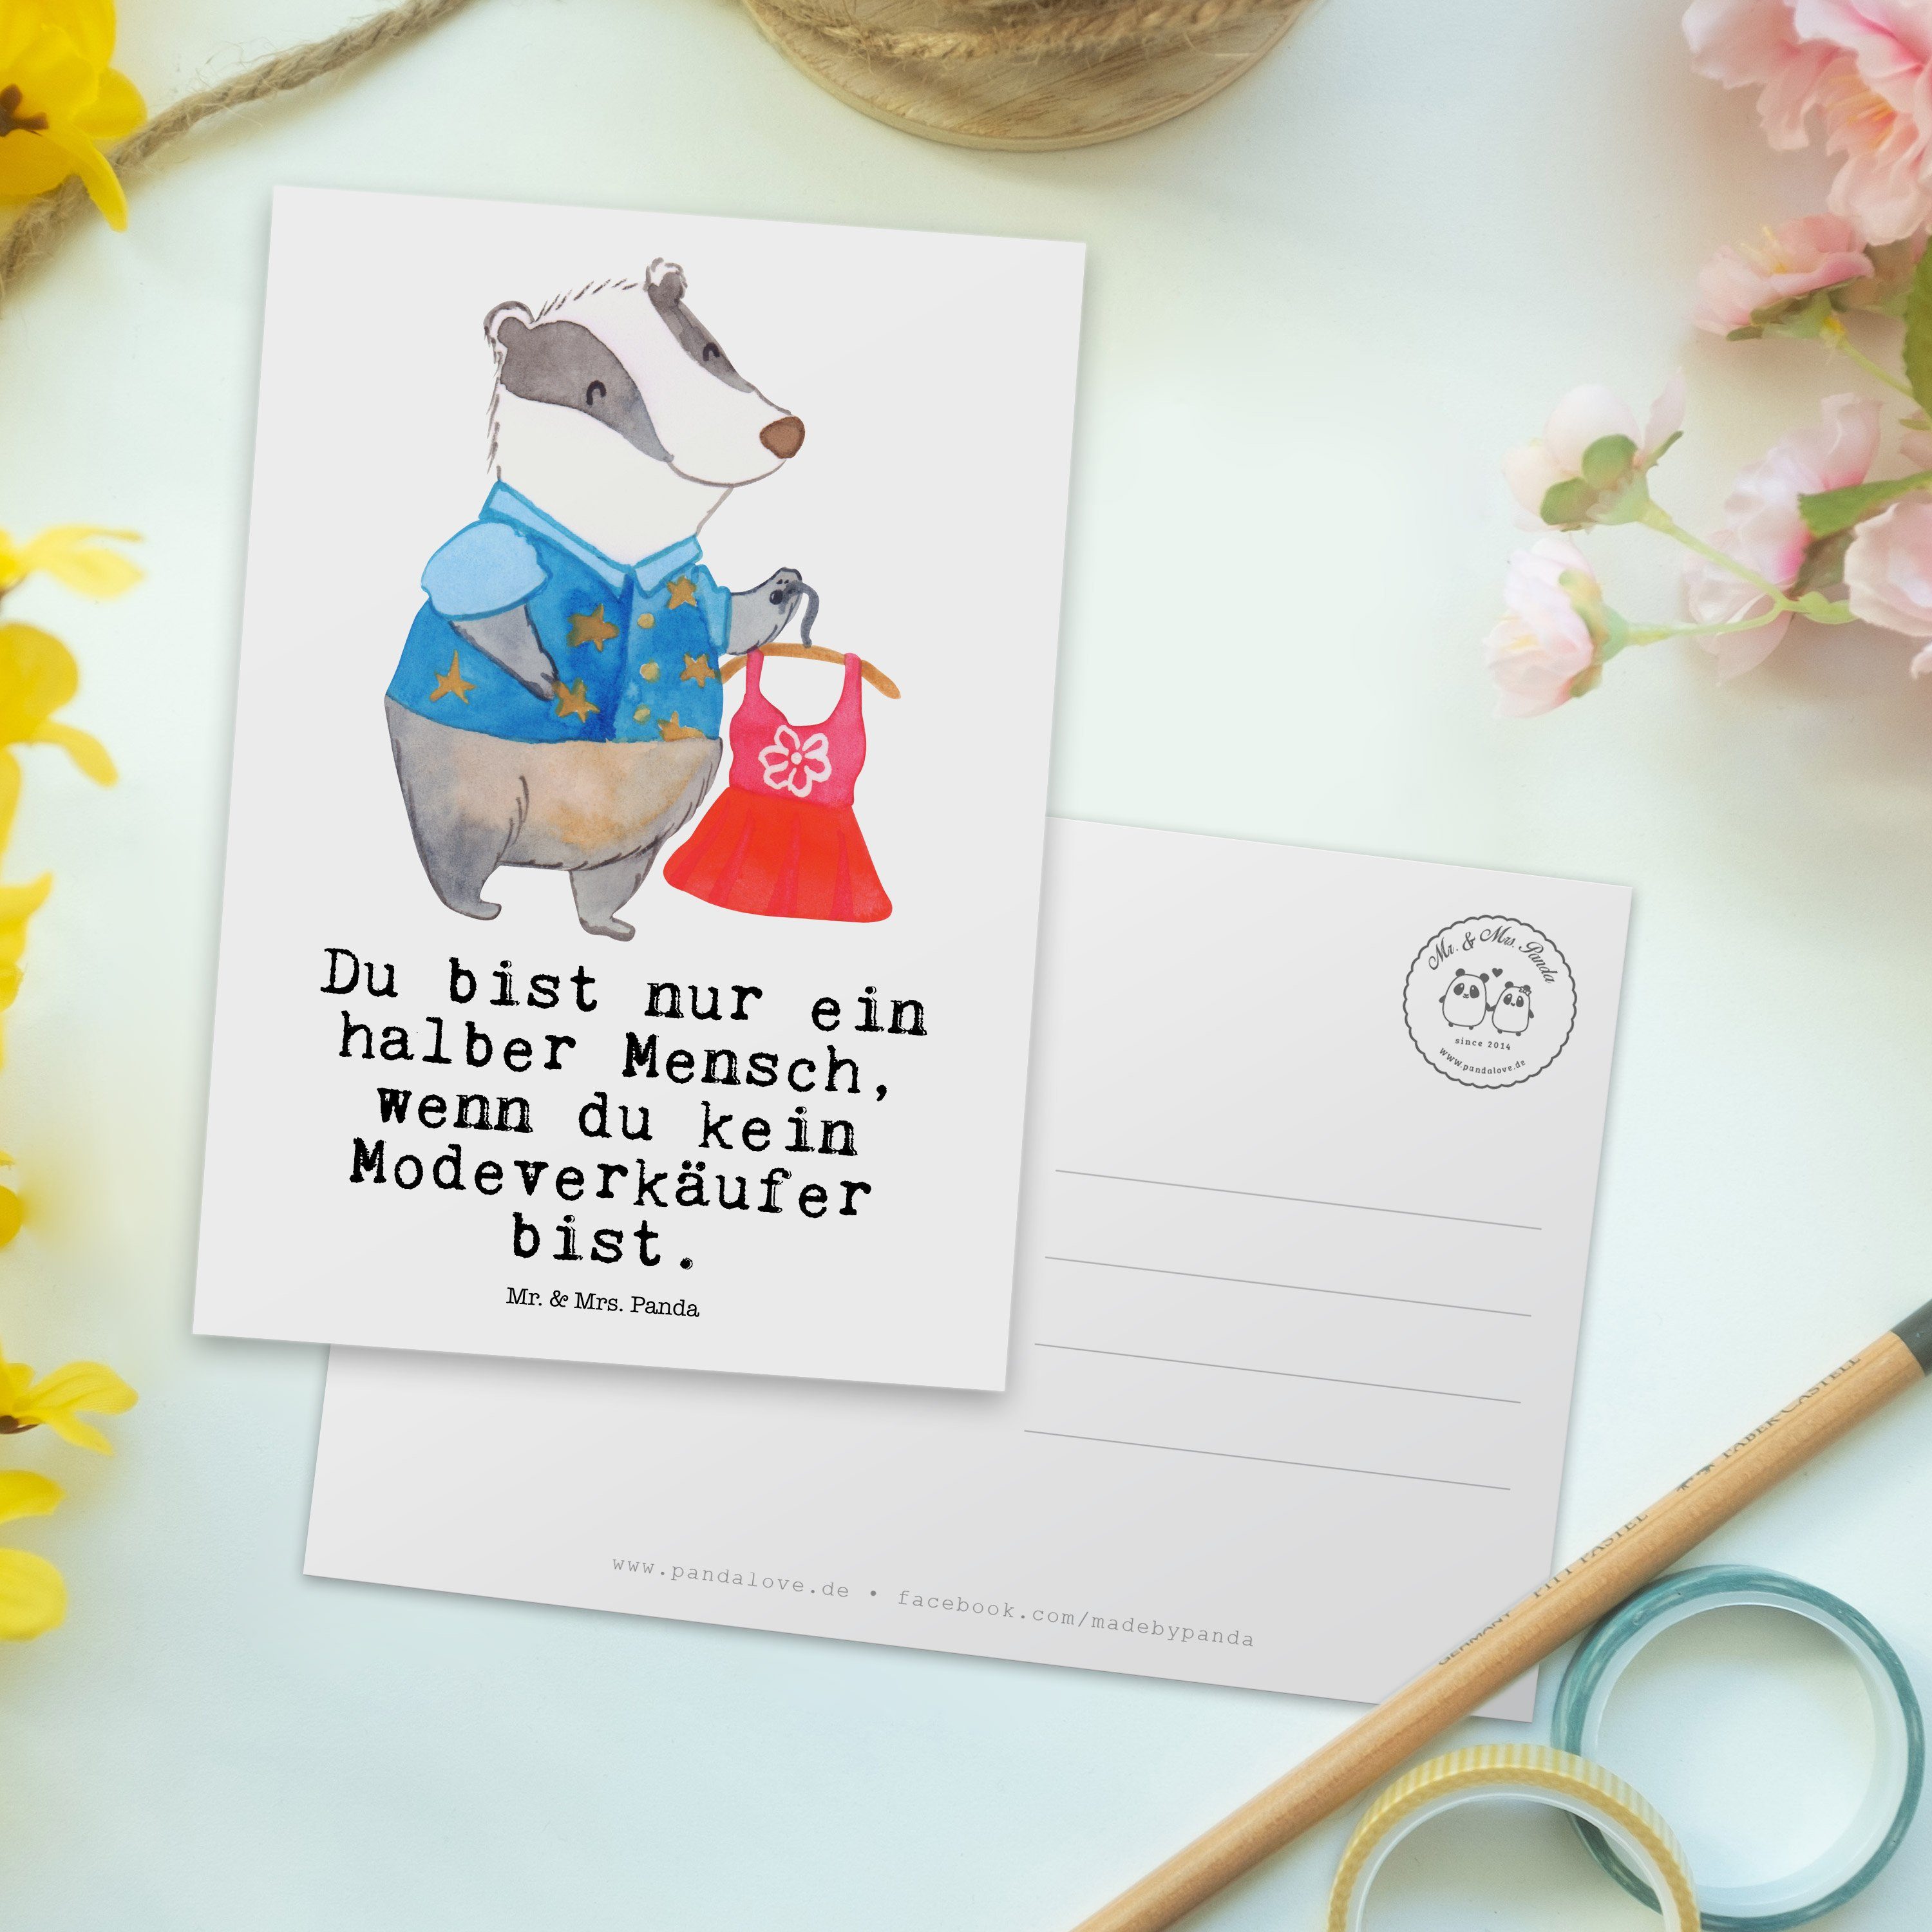 Mr. & Mrs. Panda Postkarte Fashion Modeverkäufer - Dankeskarte, - mit Geschenk, Rente, Herz Weiß